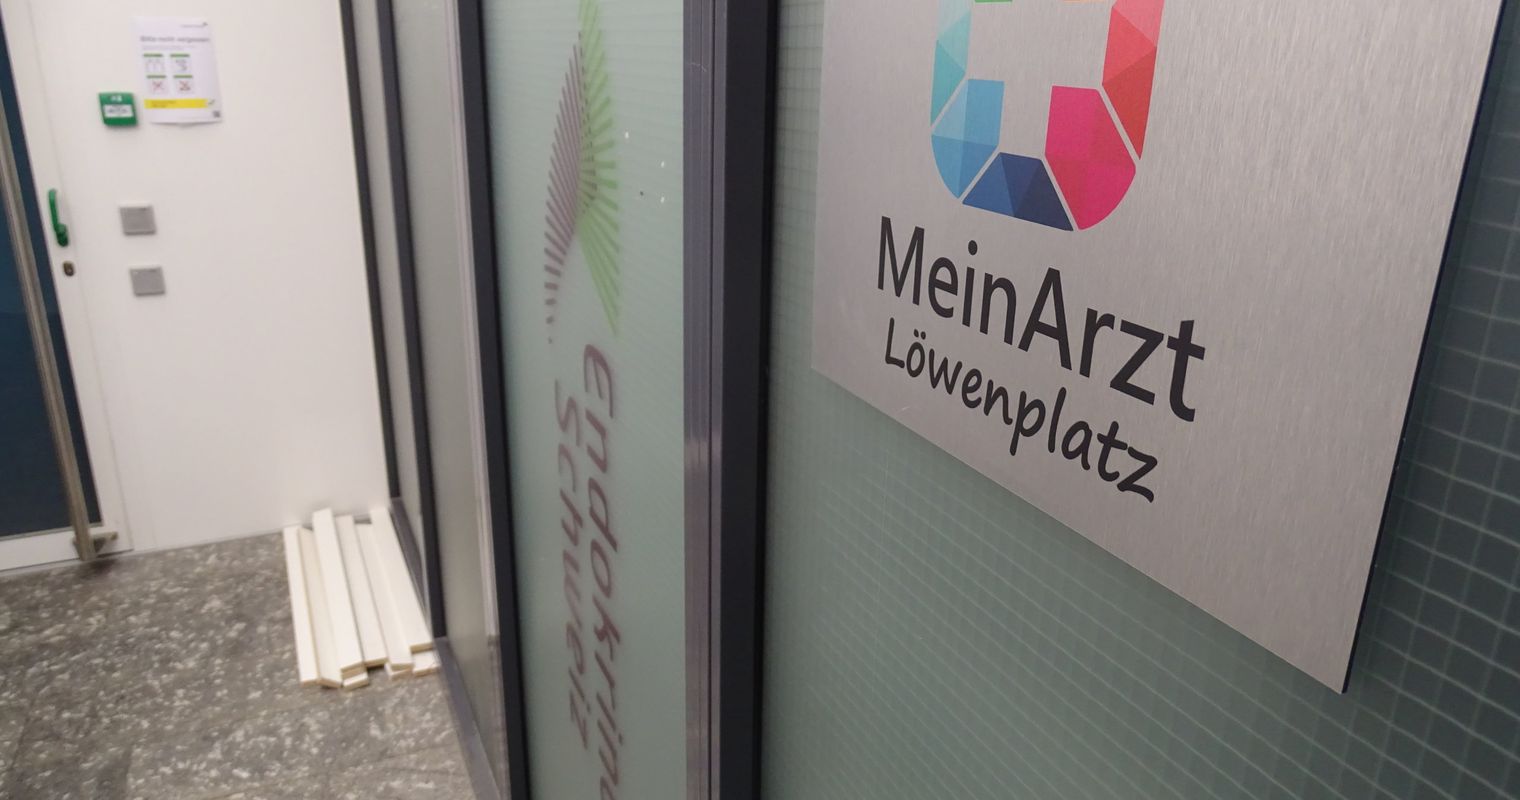 MeinArzt-Betrug: Praxis in Luzern ist verlassen